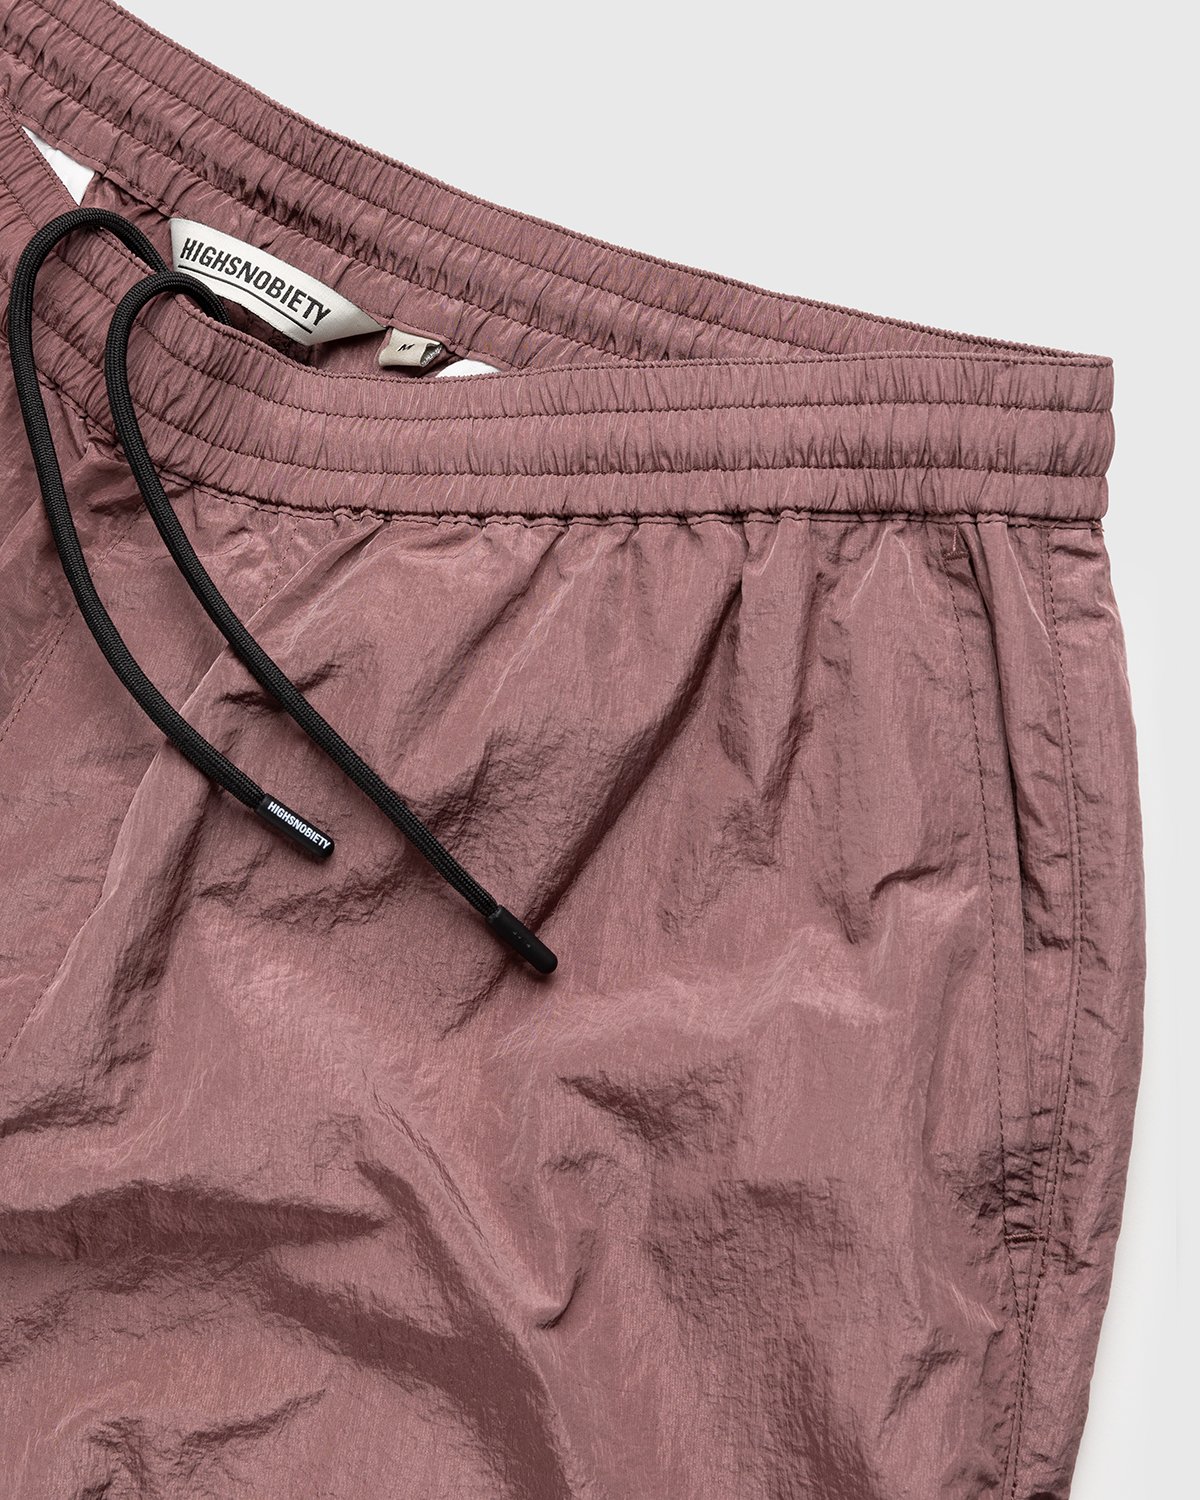 Highsnobiety - Crepe Nylon Shorts Rose Gold - Clothing - Pink - Image 4